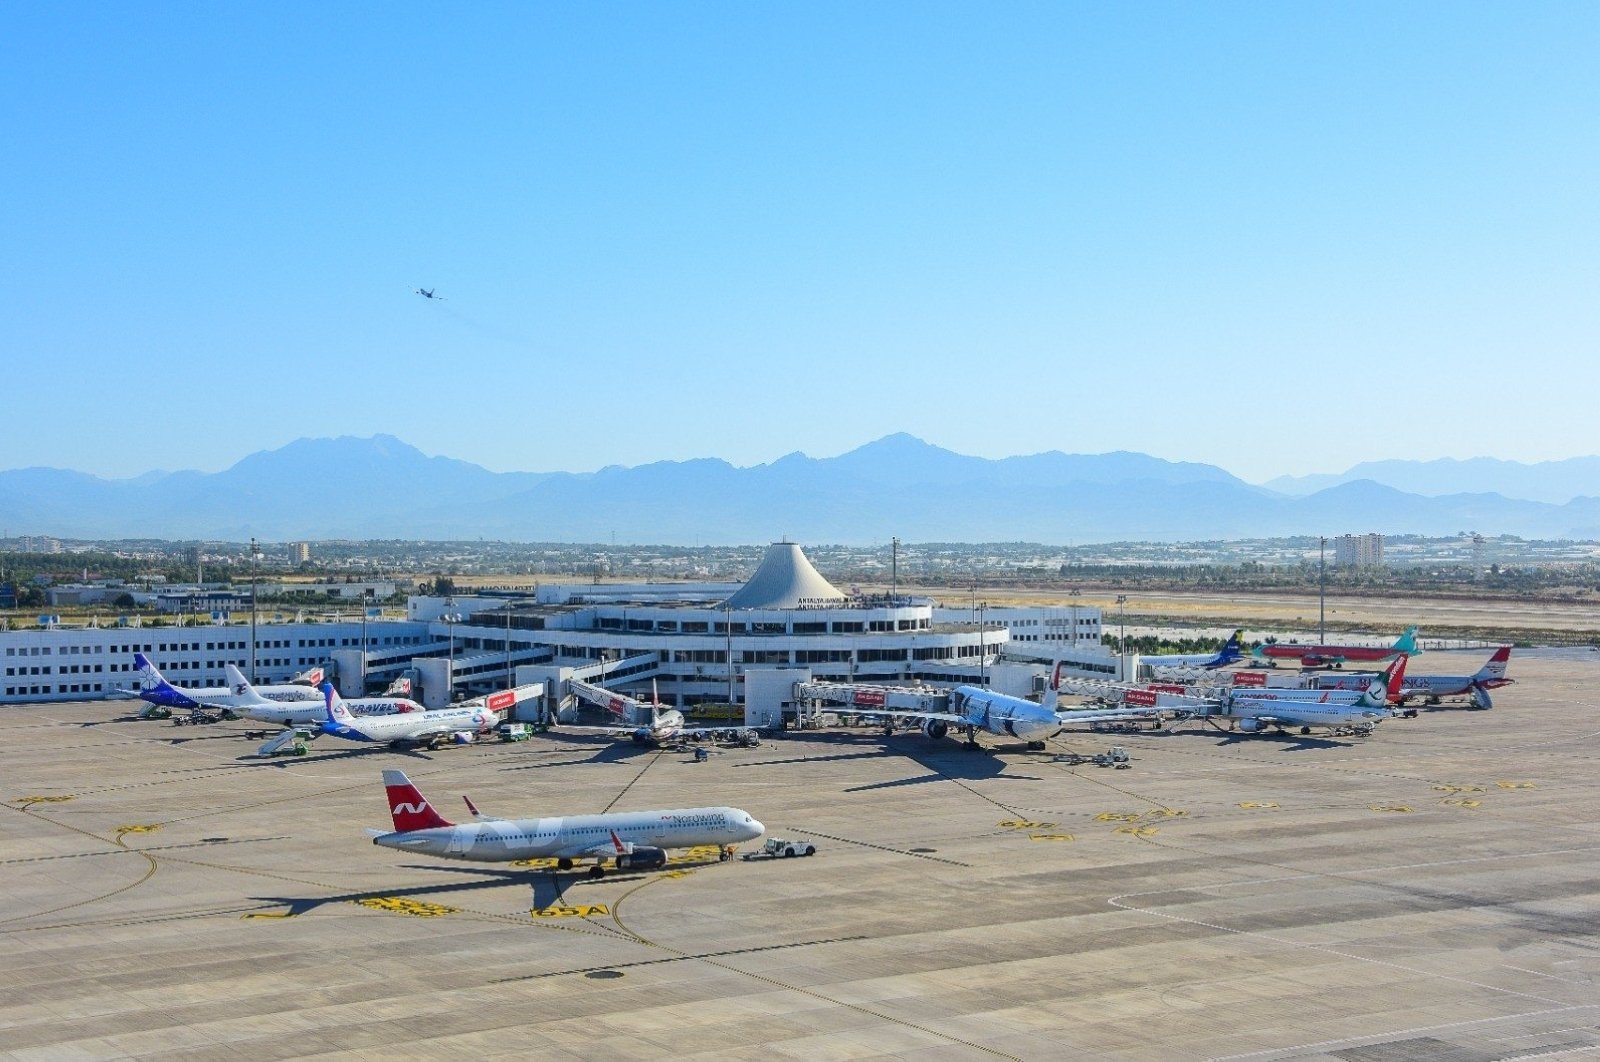 Bandara Antalya Turki mencetak rekor untuk sebagian besar penerbangan harian